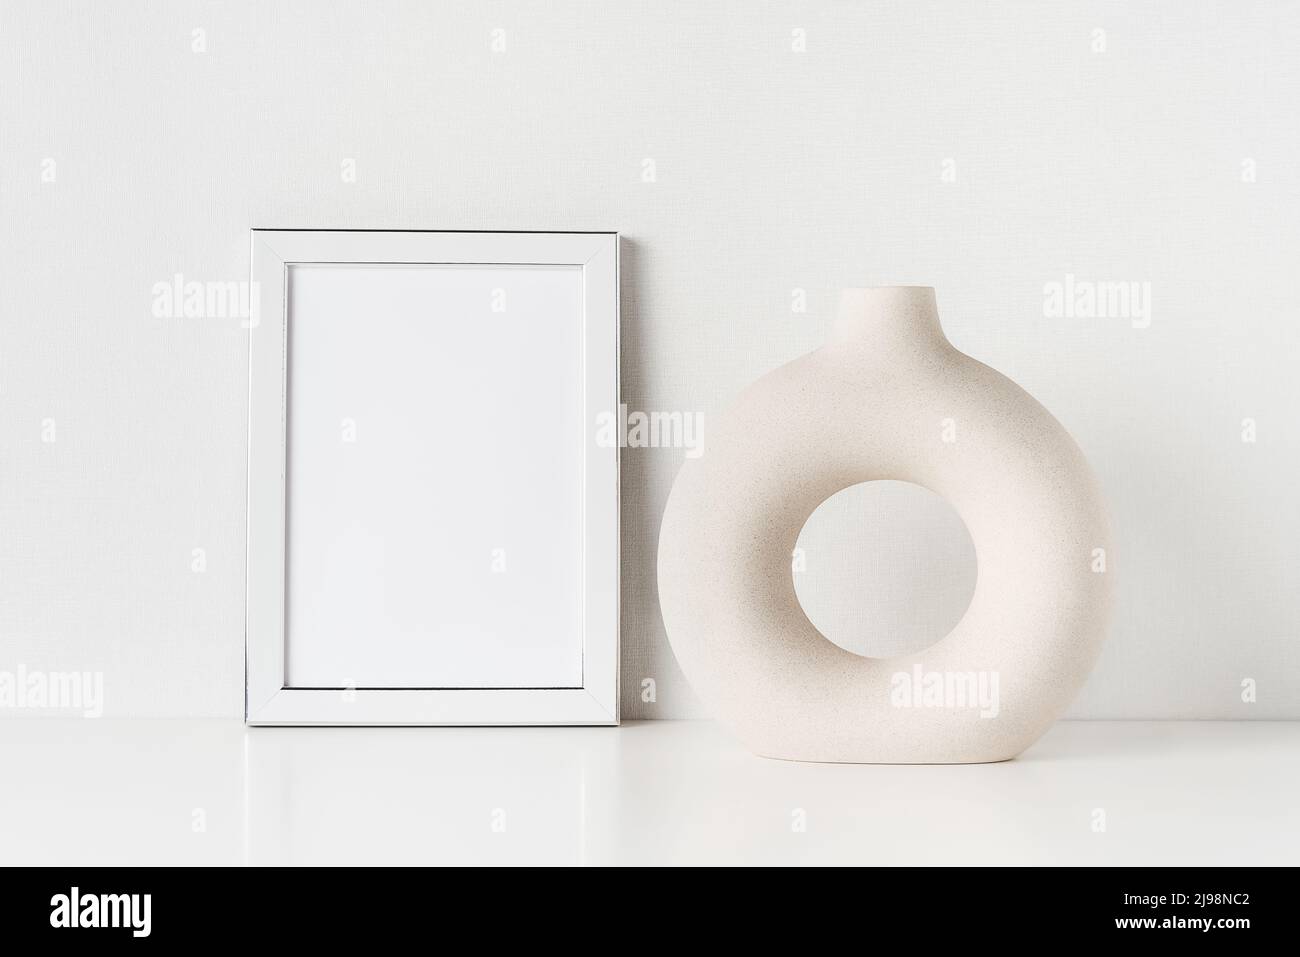 Weißer Rahmen-Mockup und runde Keramikvase auf einem weißen Tisch an der Wand. Platz für Text kopieren Stockfoto